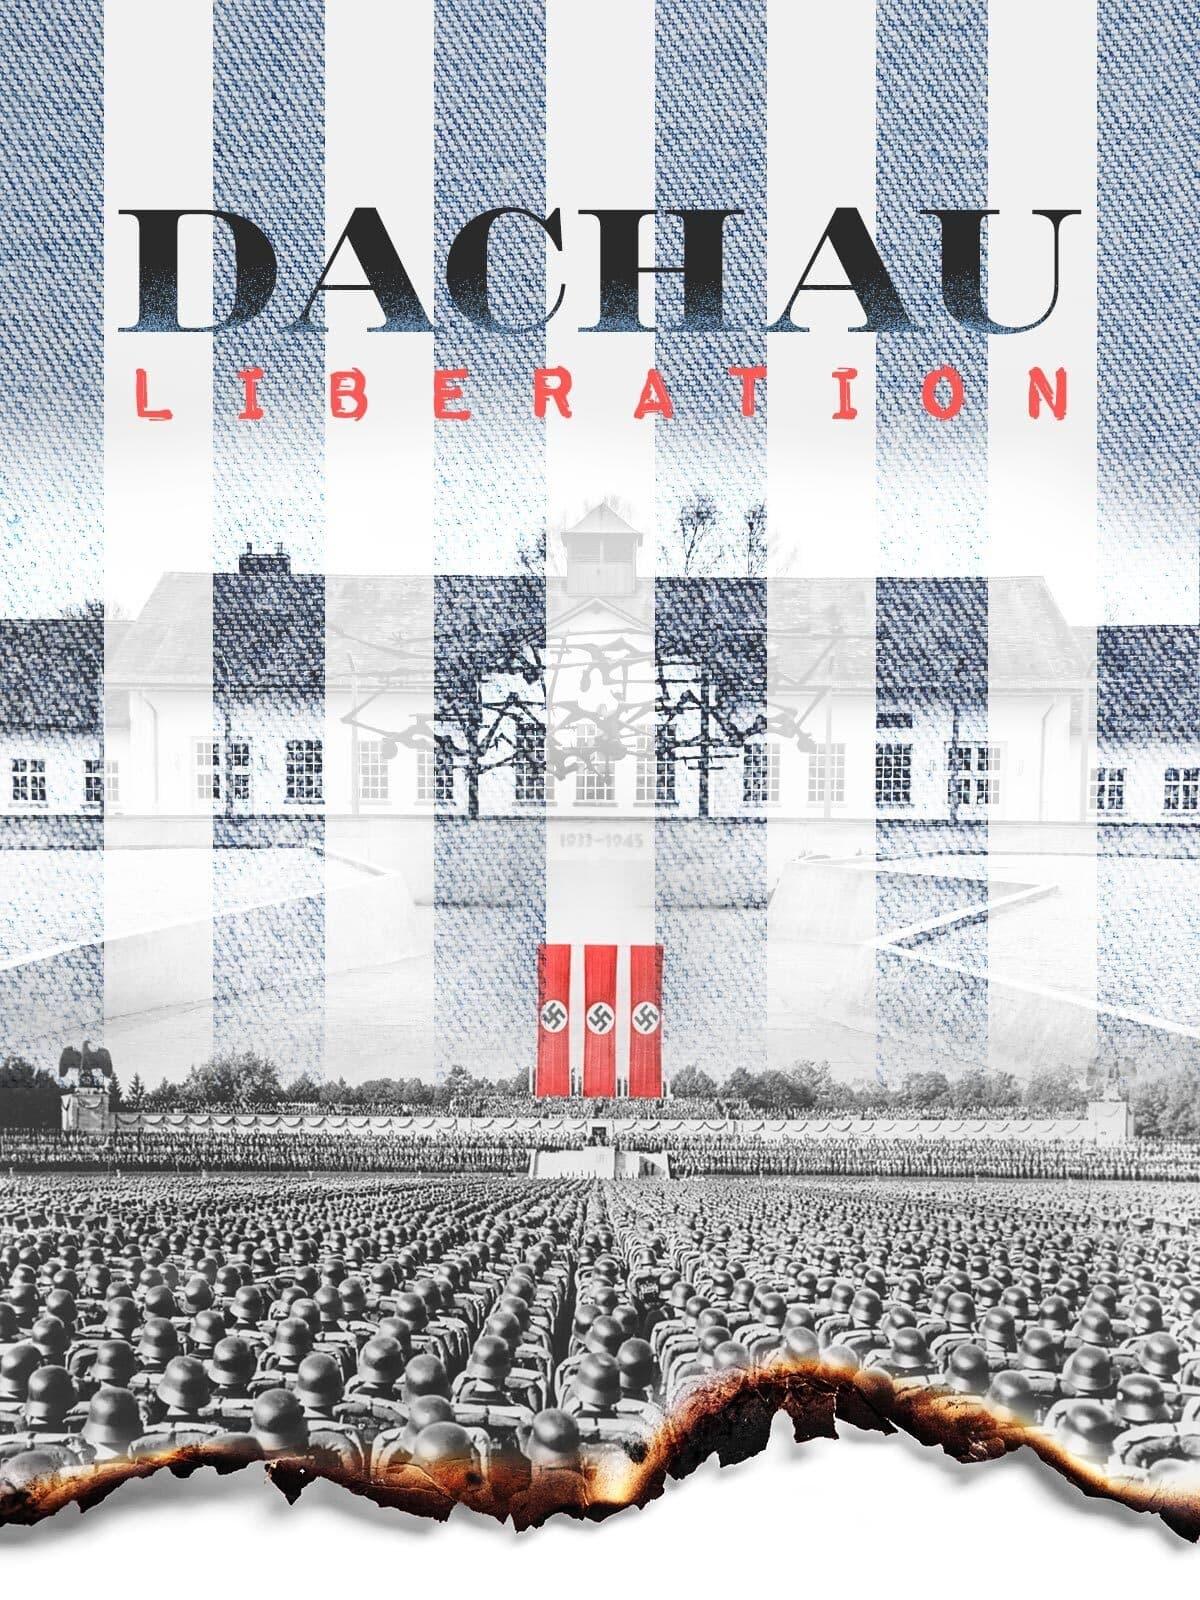 Dachau: Death Camp poster